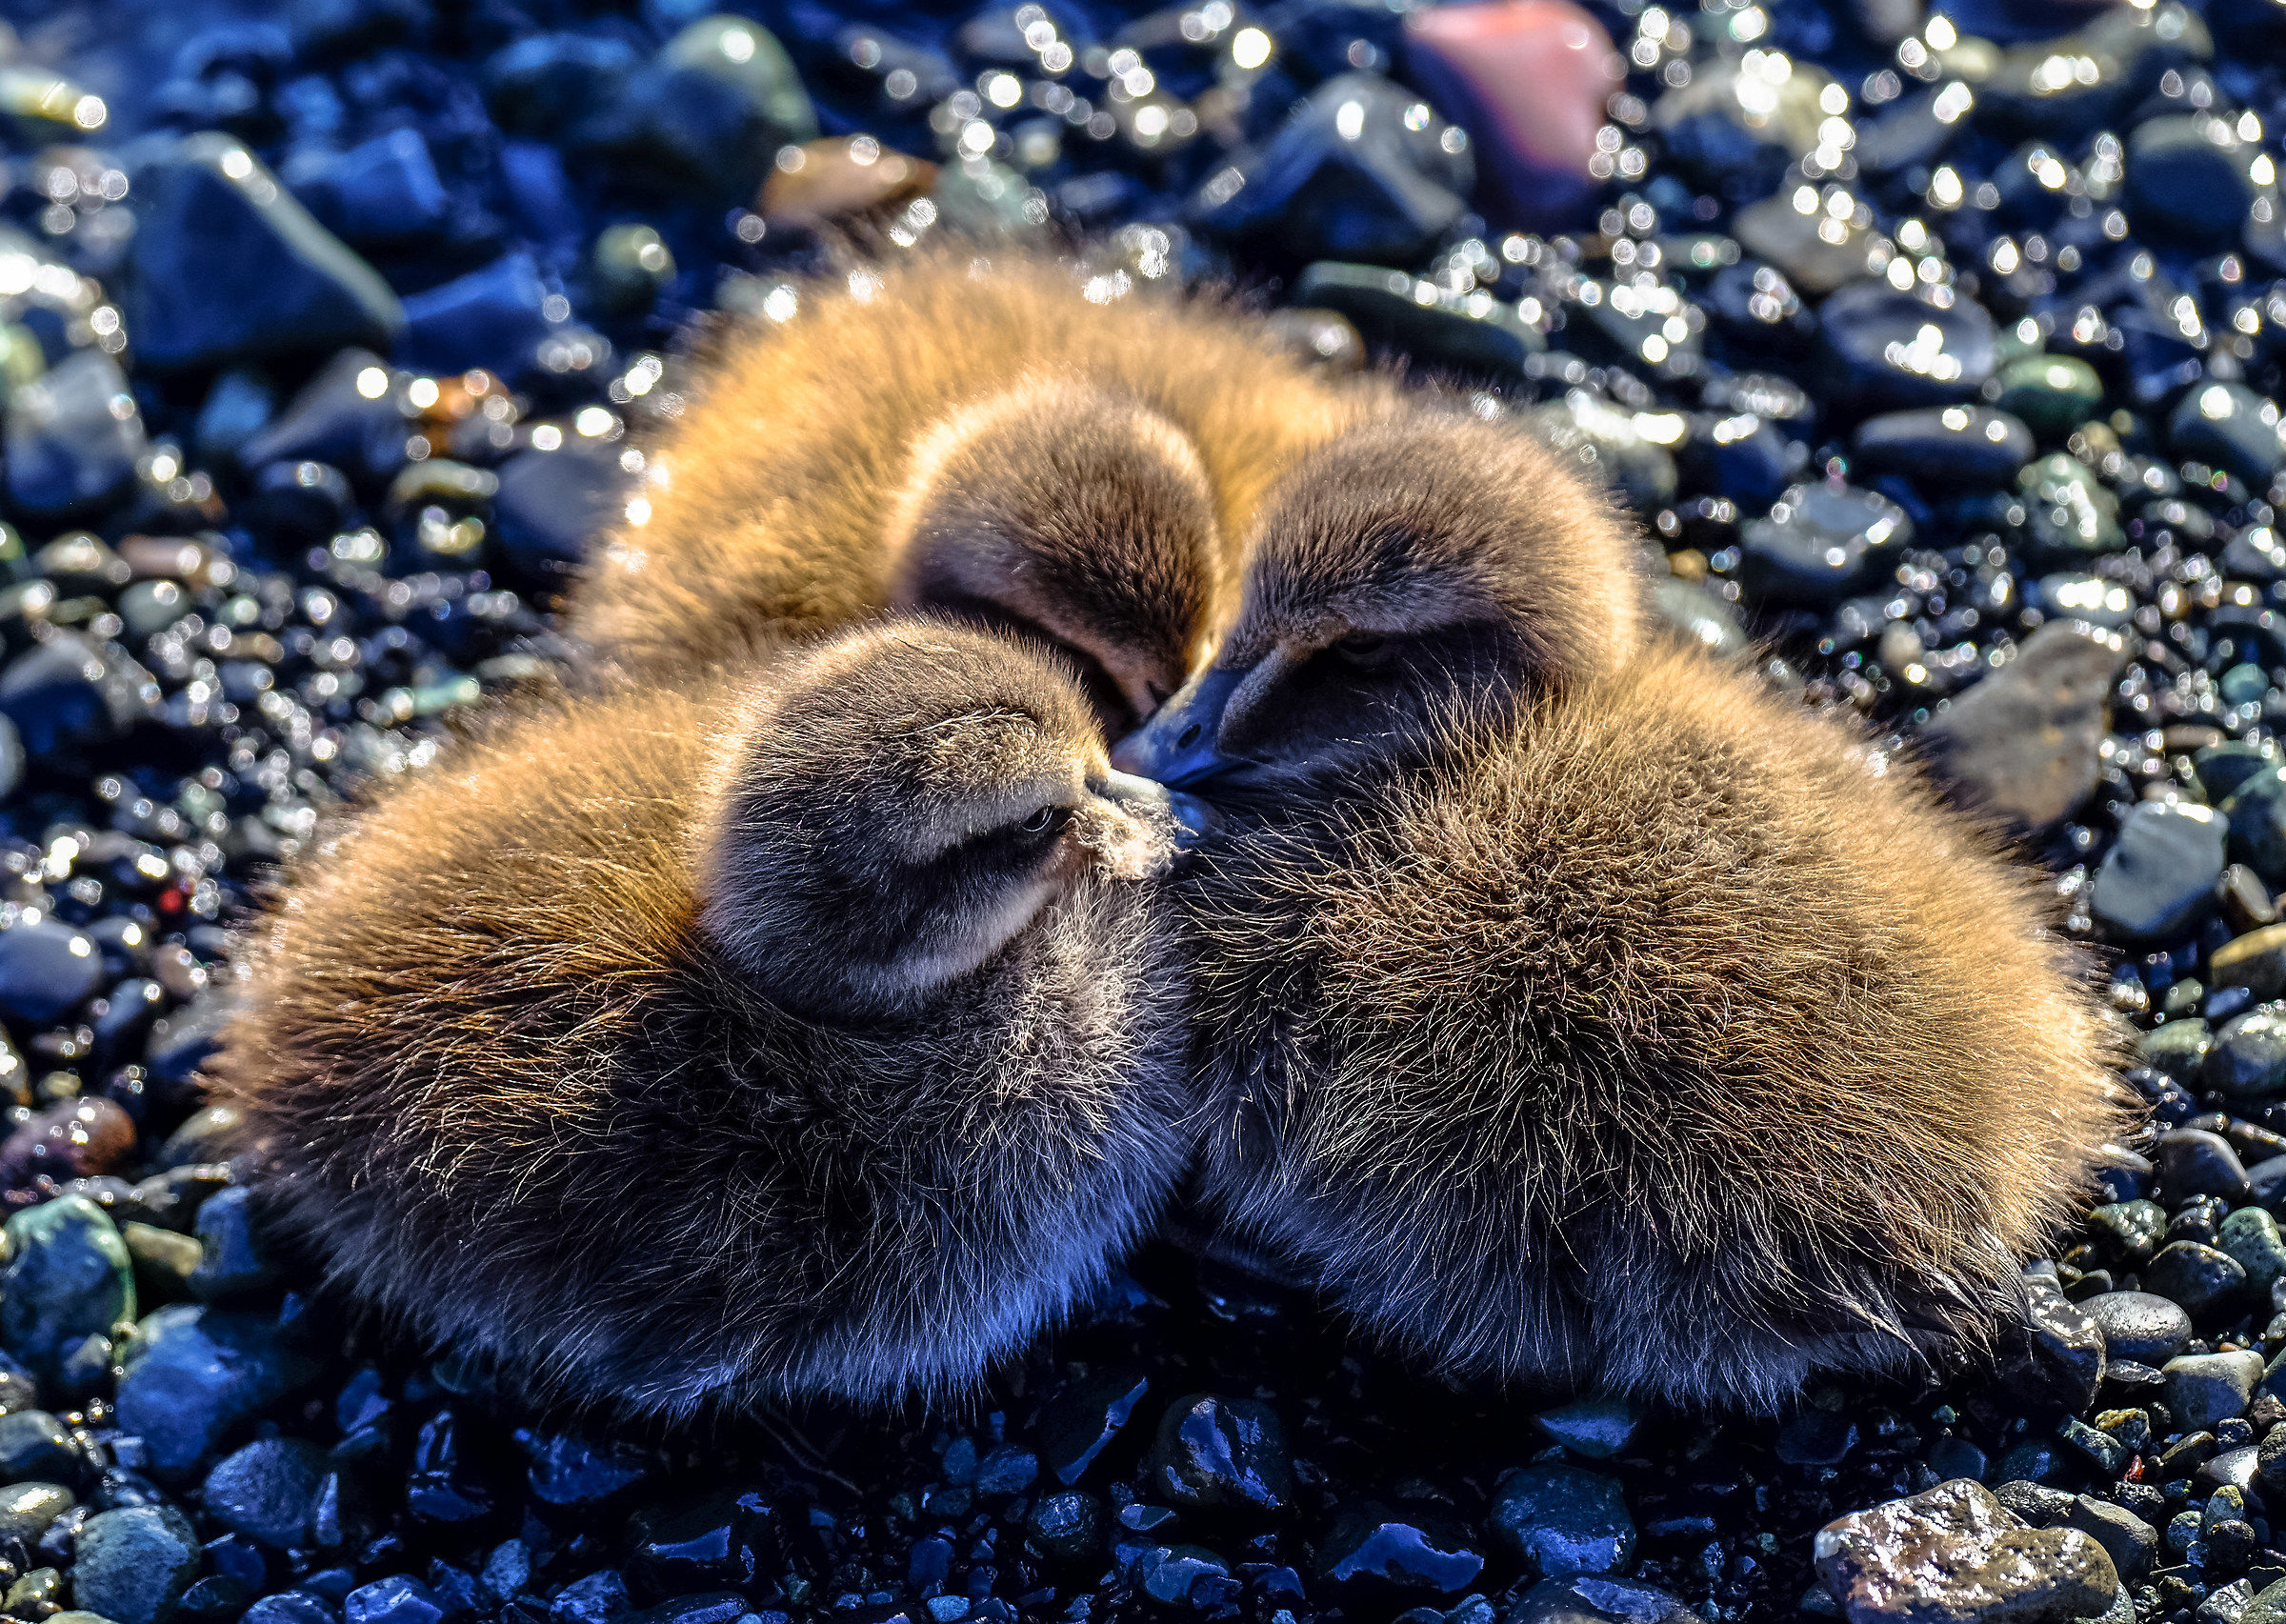 little chicks...